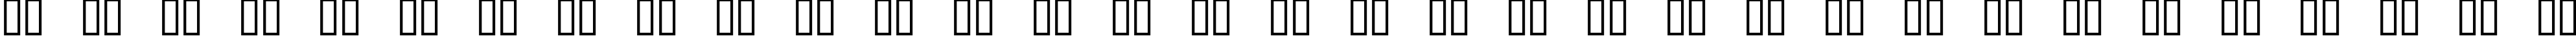 Пример написания русского алфавита шрифтом 04b_09